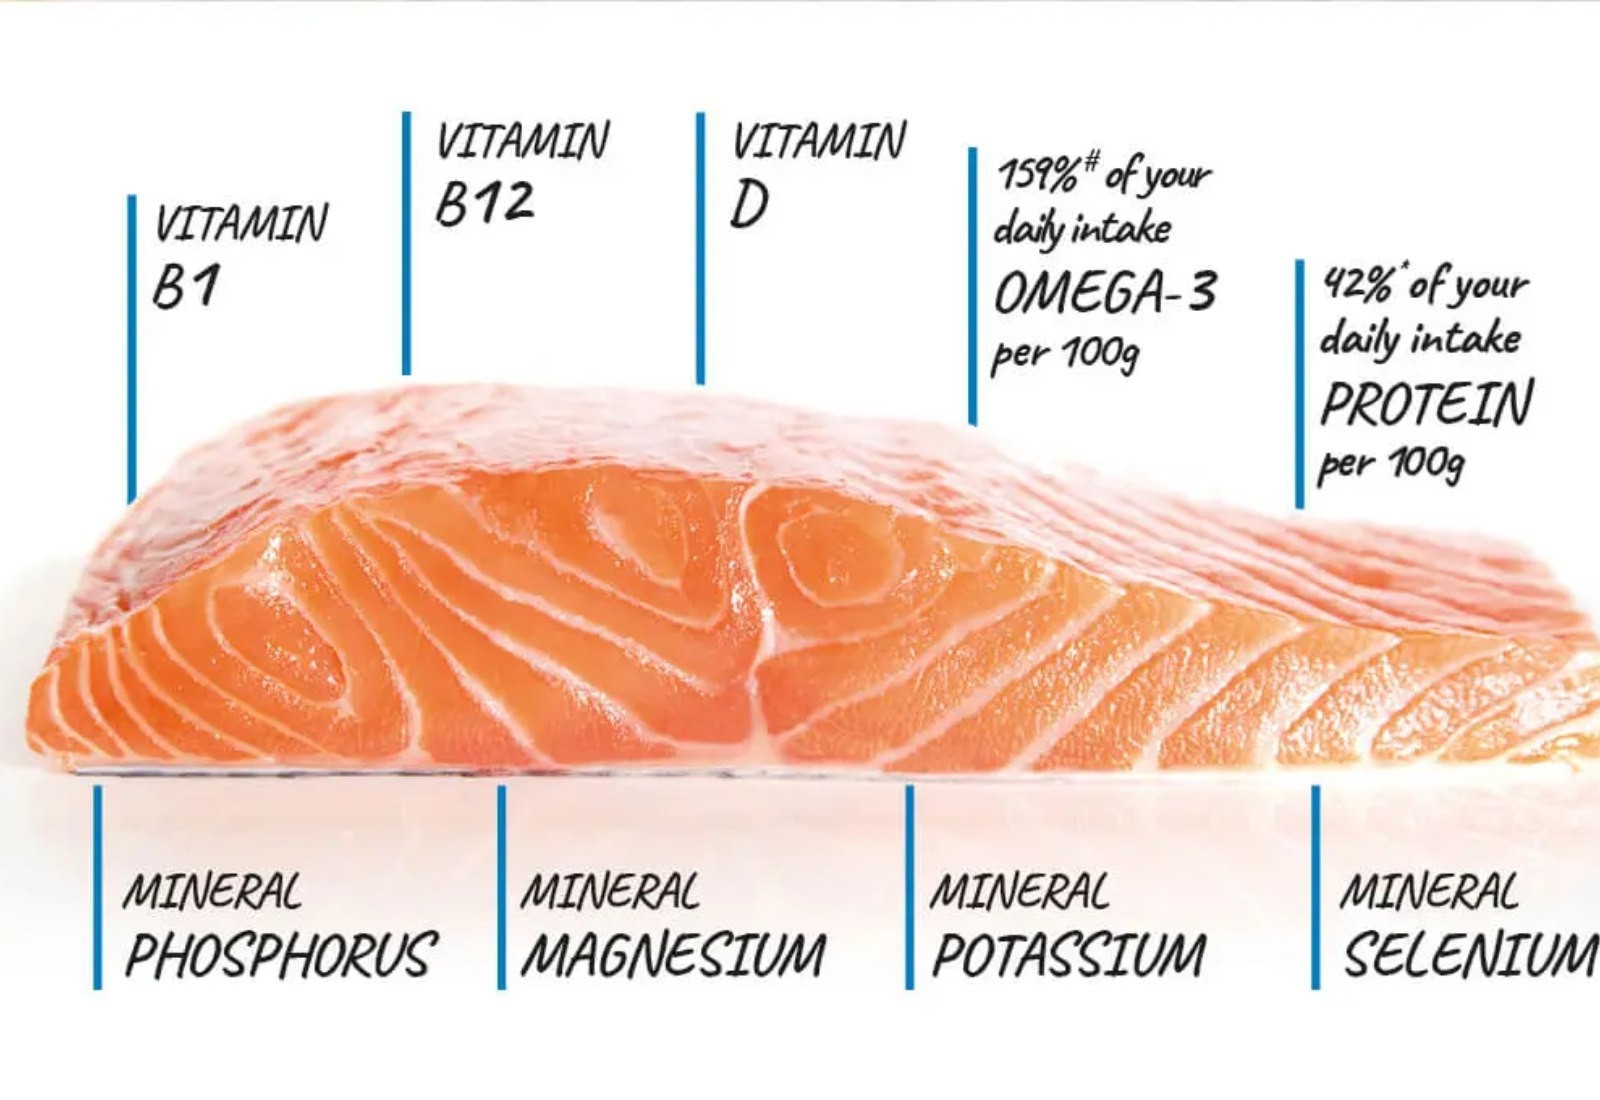 Dinh dưỡng đặc biệt từ cá hồi giúp nâng cao sức khoẻ và duy trì vóc dáng